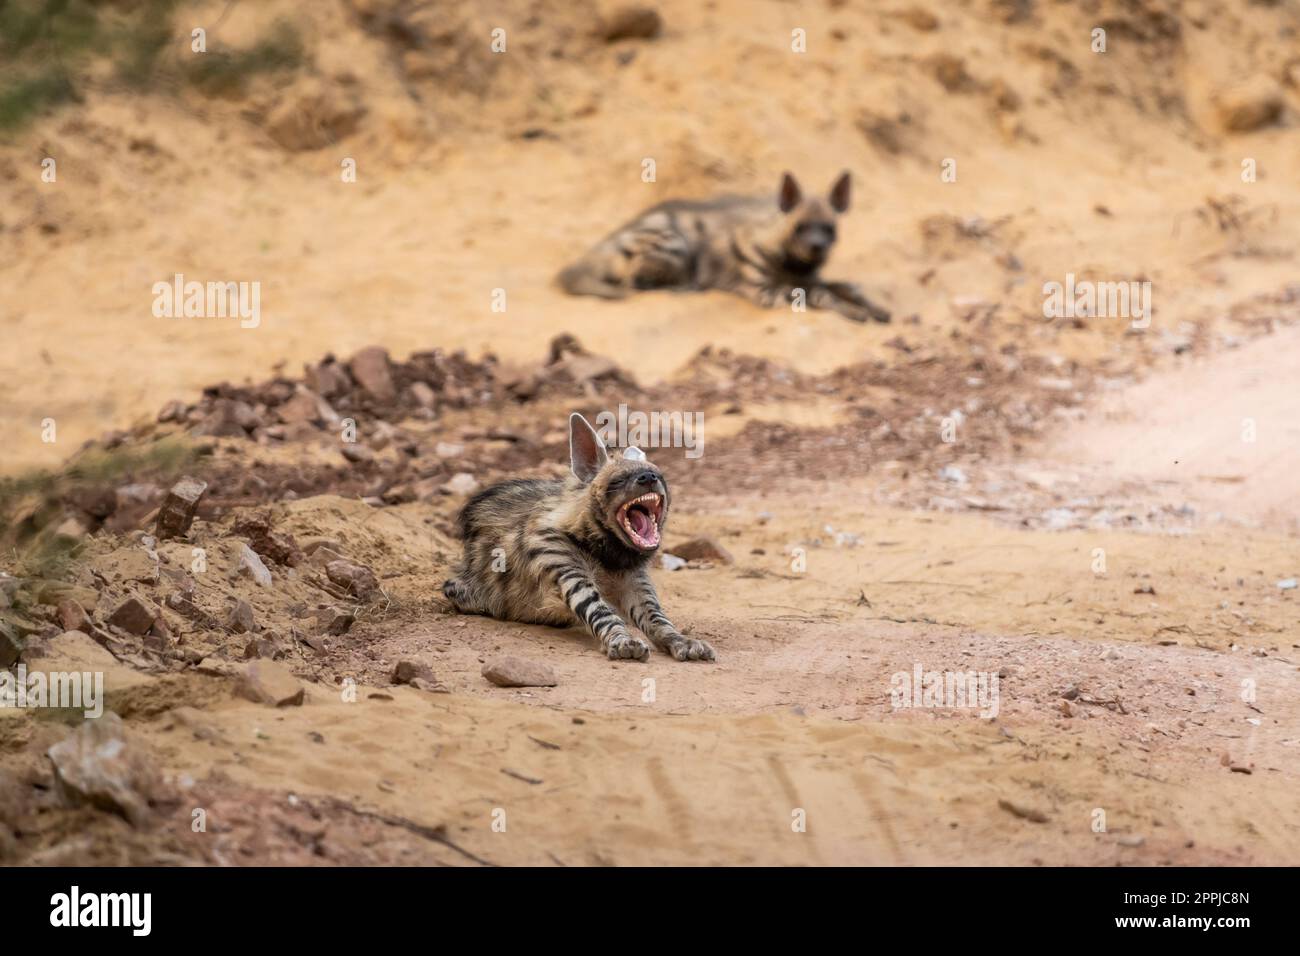 Wild Striped hyena o hyena famiglia o coppia in azione con espressione arrabbiata durante il safari all'aperto nella giungla parco nazionale ranthambore foresta Foto Stock